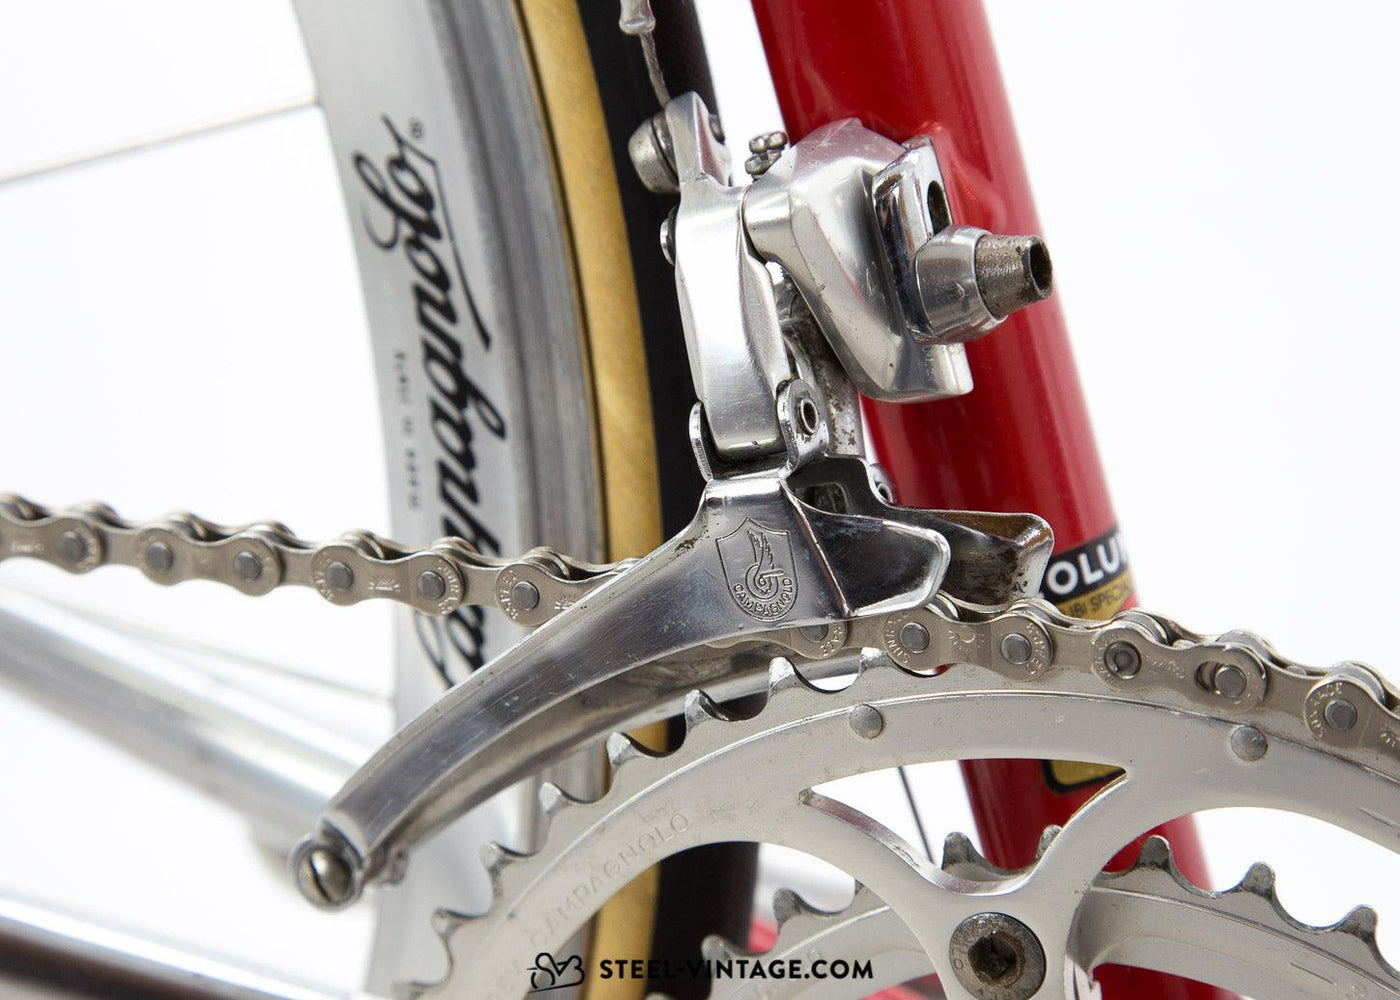 Team La William-Duvel Chesini Innovation Luc Colyn 1992 | Steel Vintage Bikes